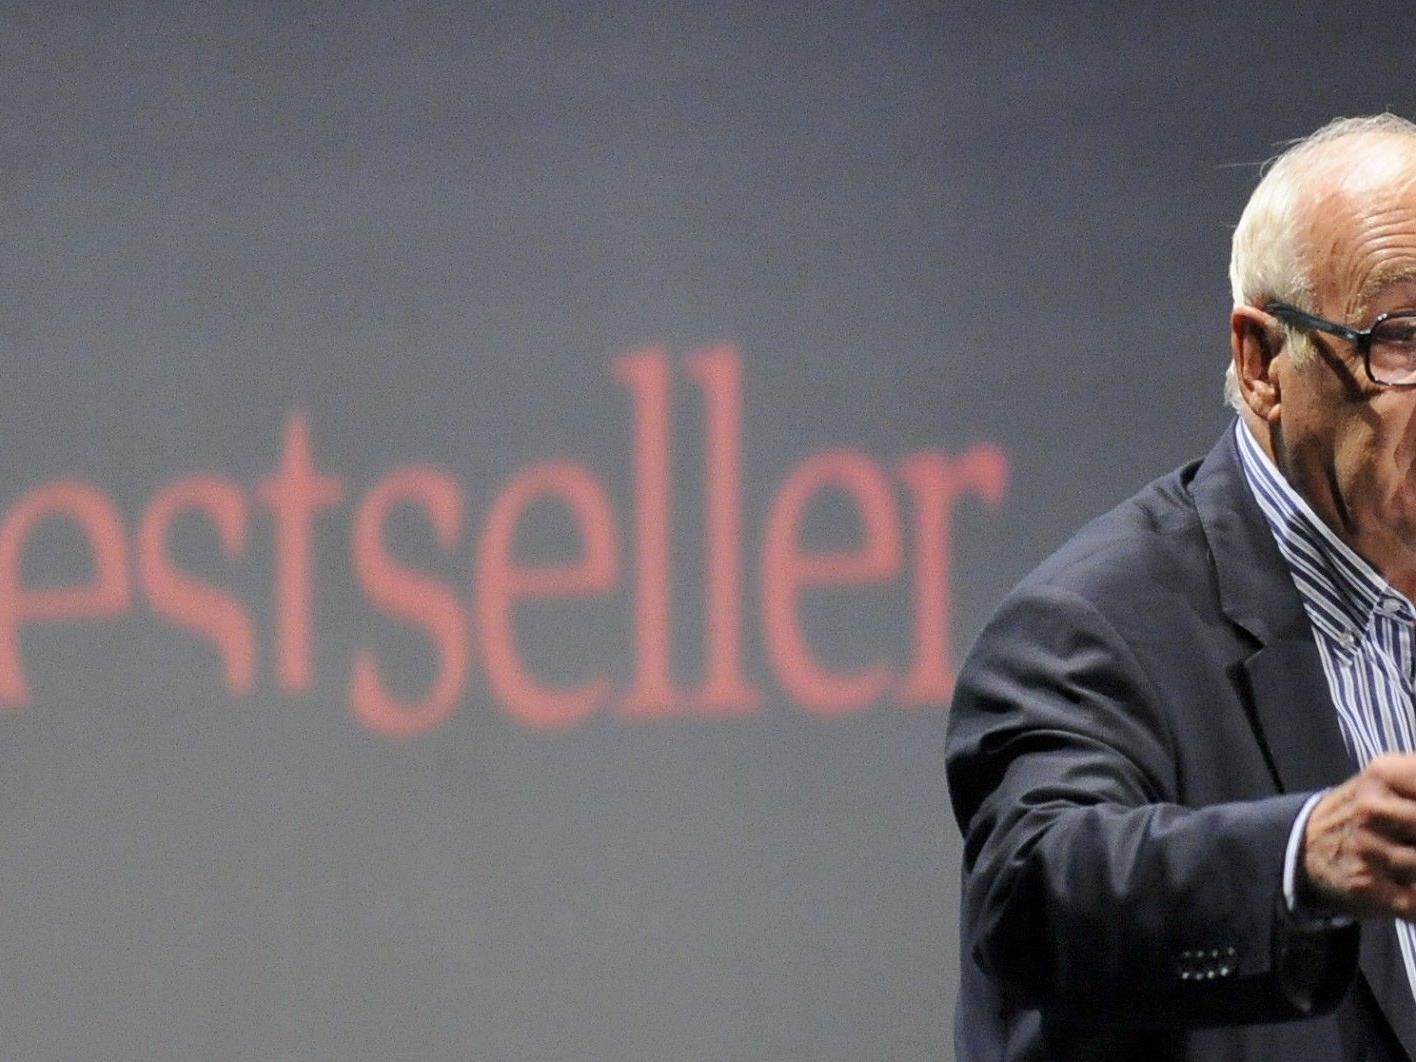 Globalisierungs-Kritiker Jean Ziegler während seines Vortrages bei den 19. Österreichischen Medientagen in Wien.